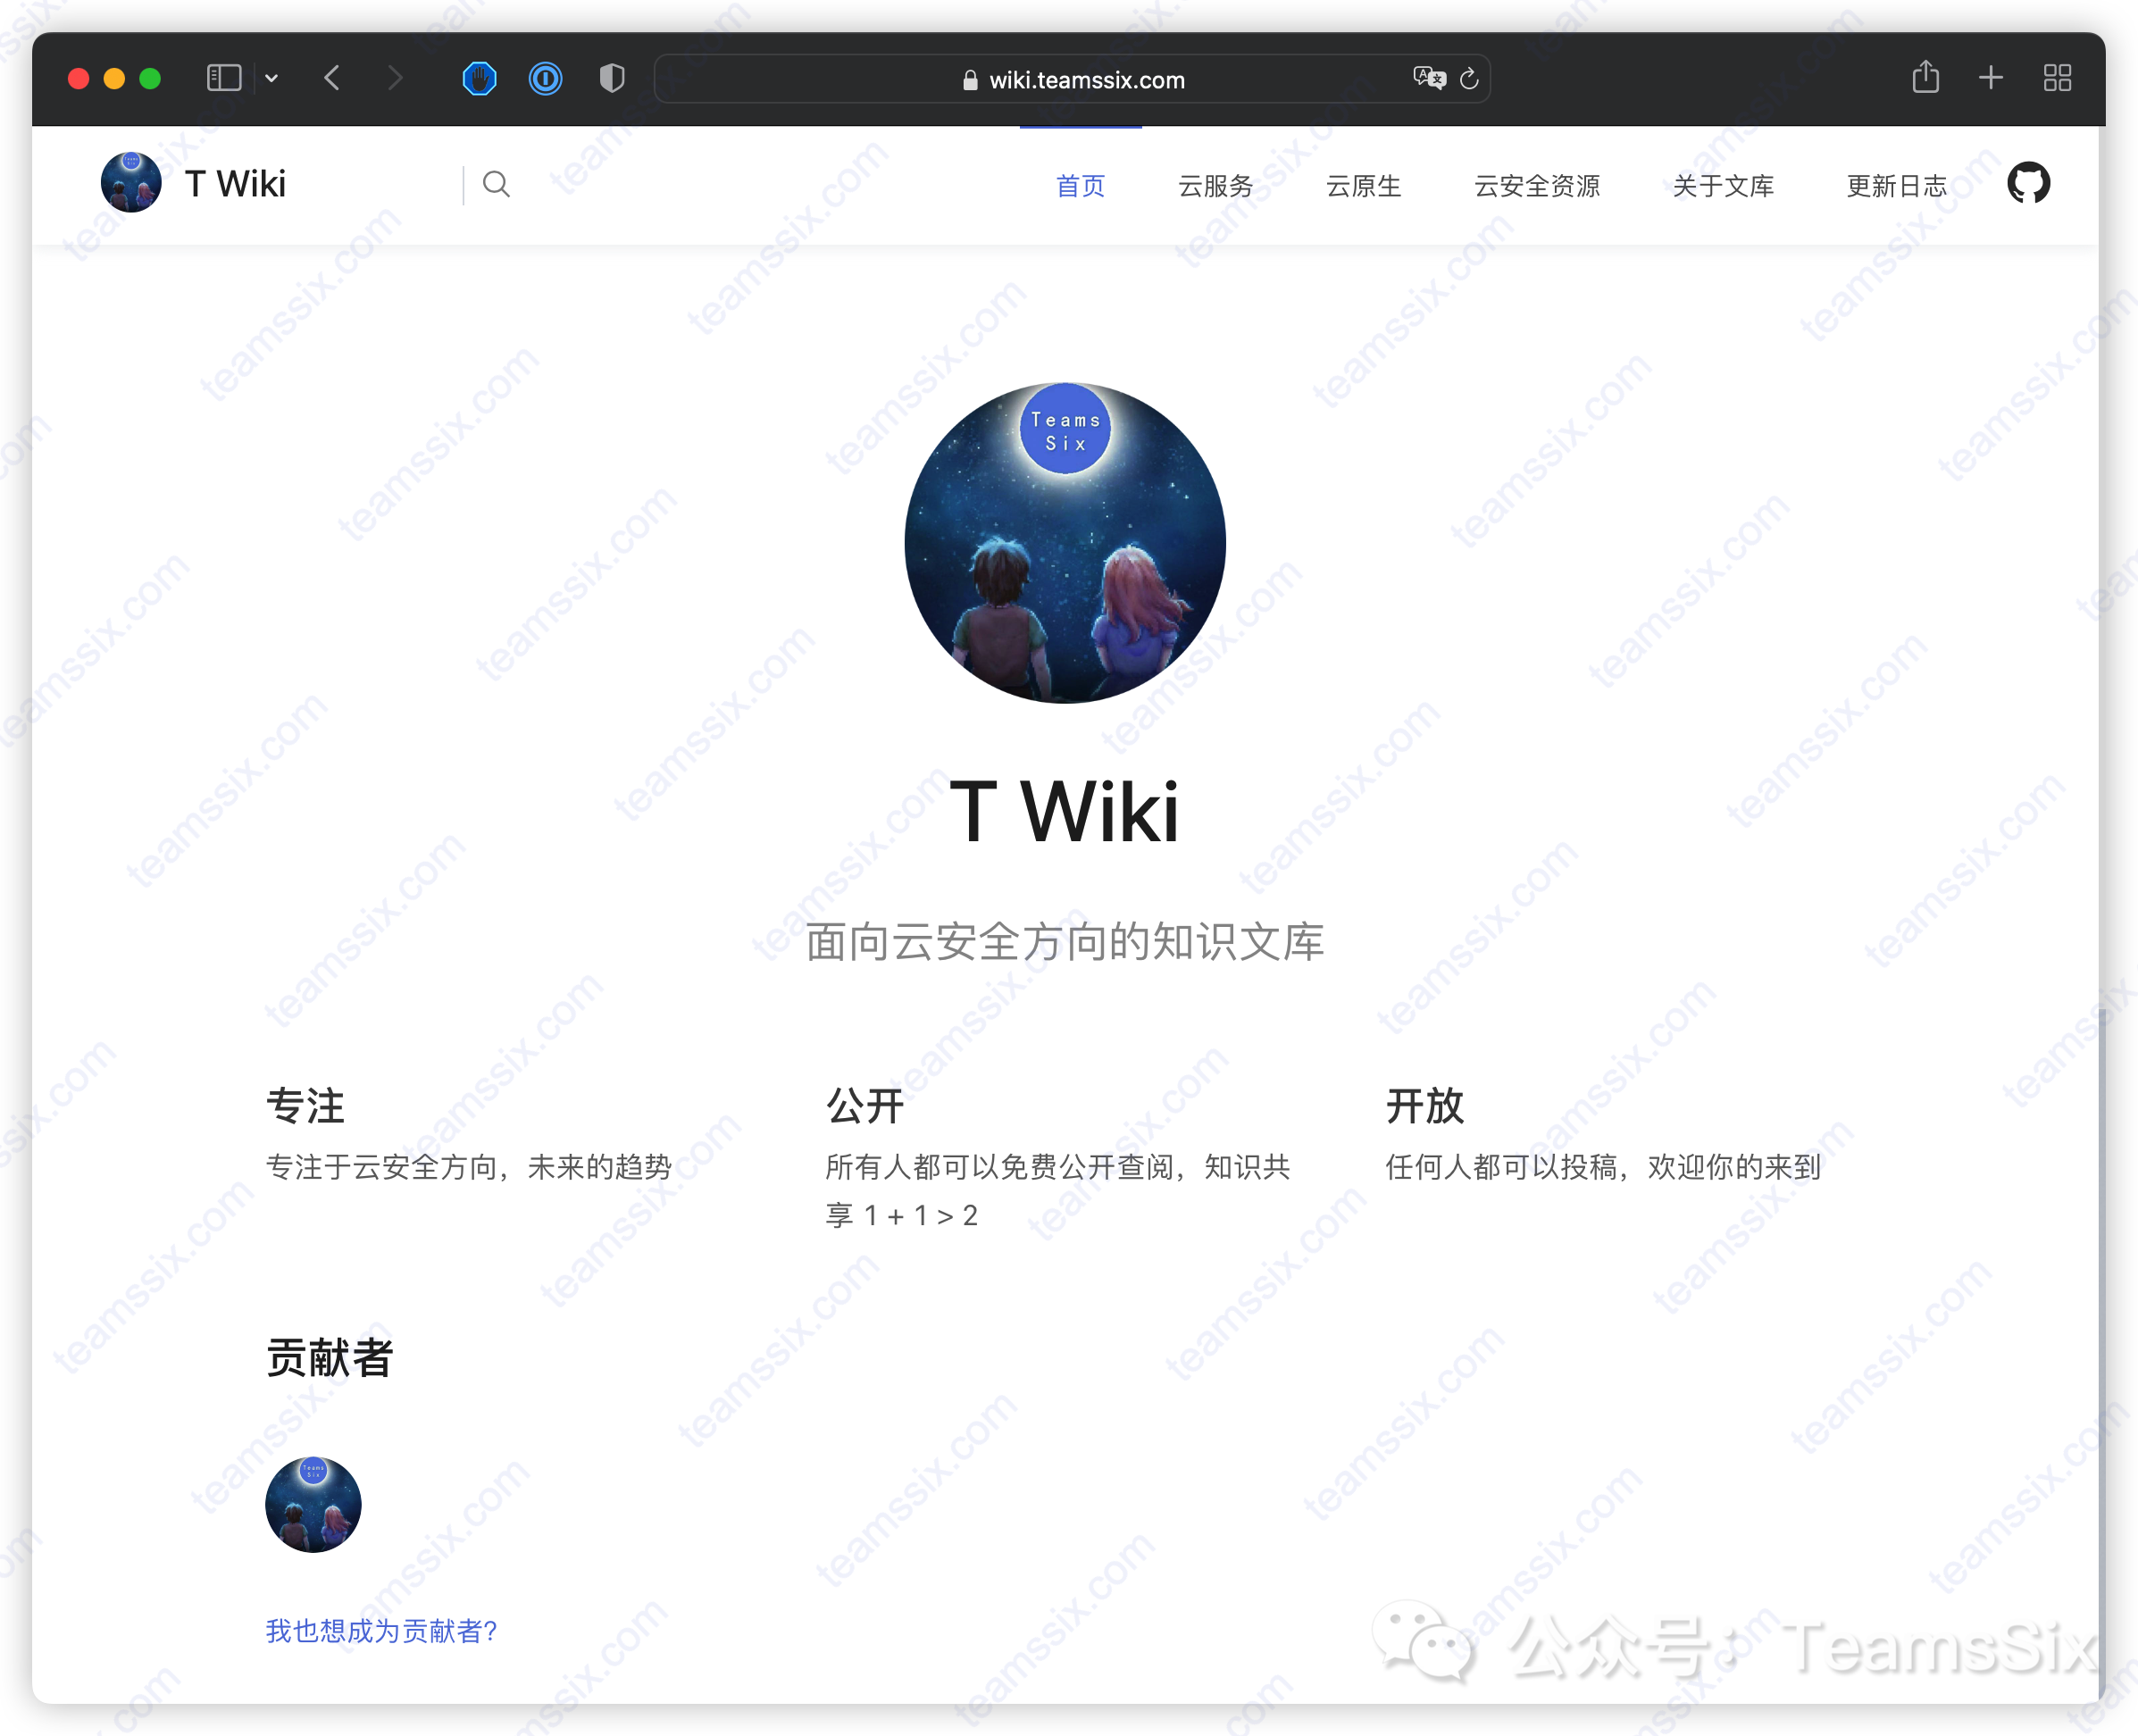 TWiki 云安全知识文库上线